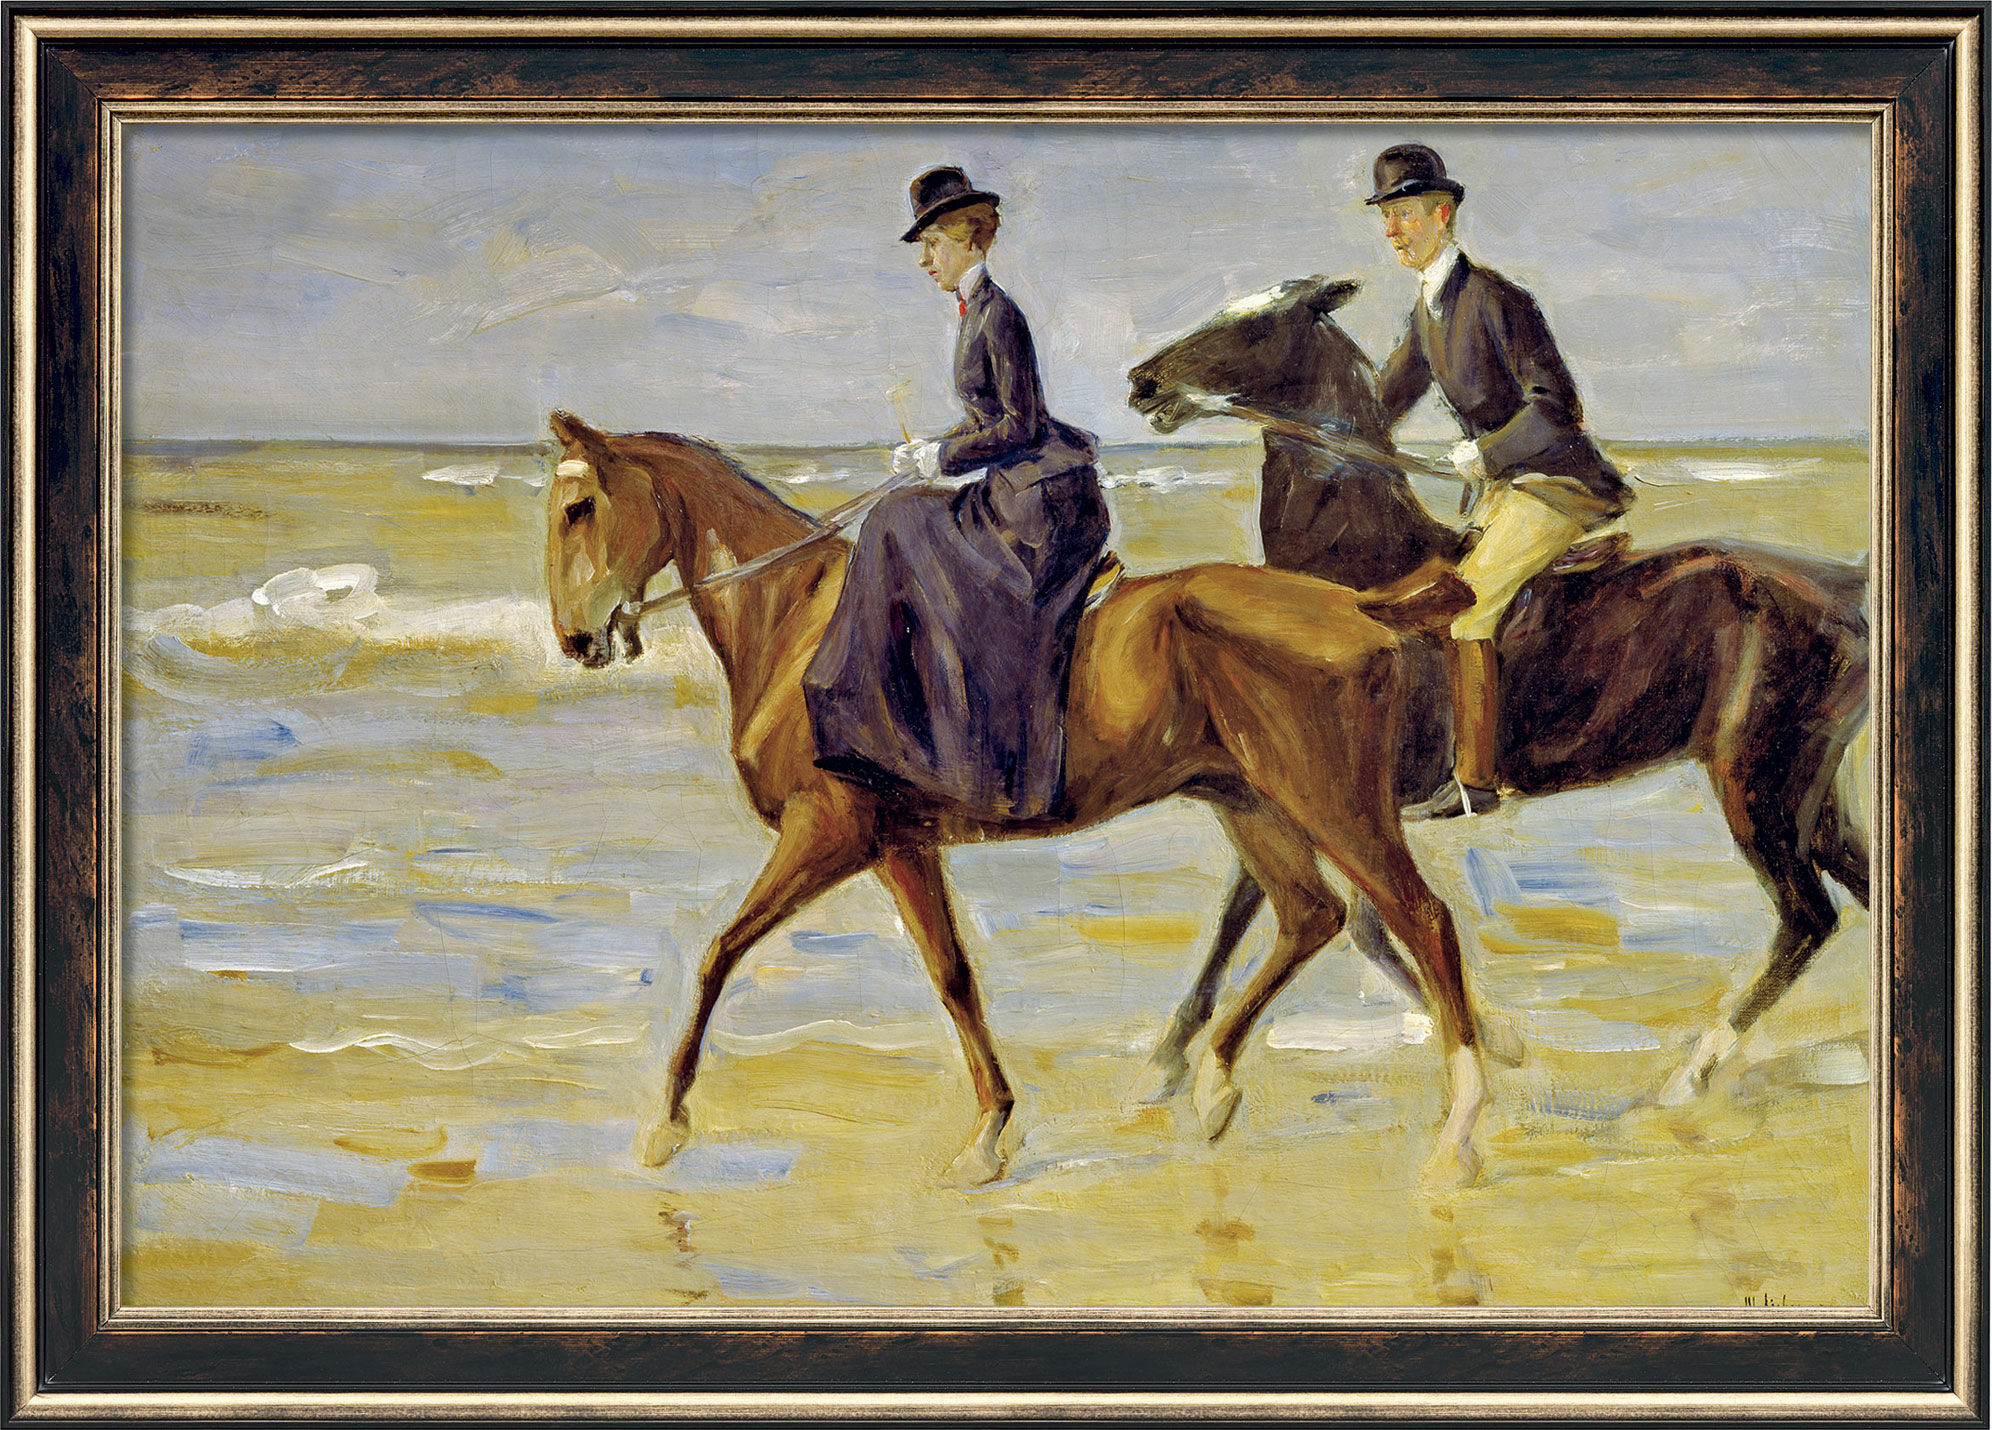 Tableau "Deux cavaliers sur la plage" (1903), encadré von Max Liebermann